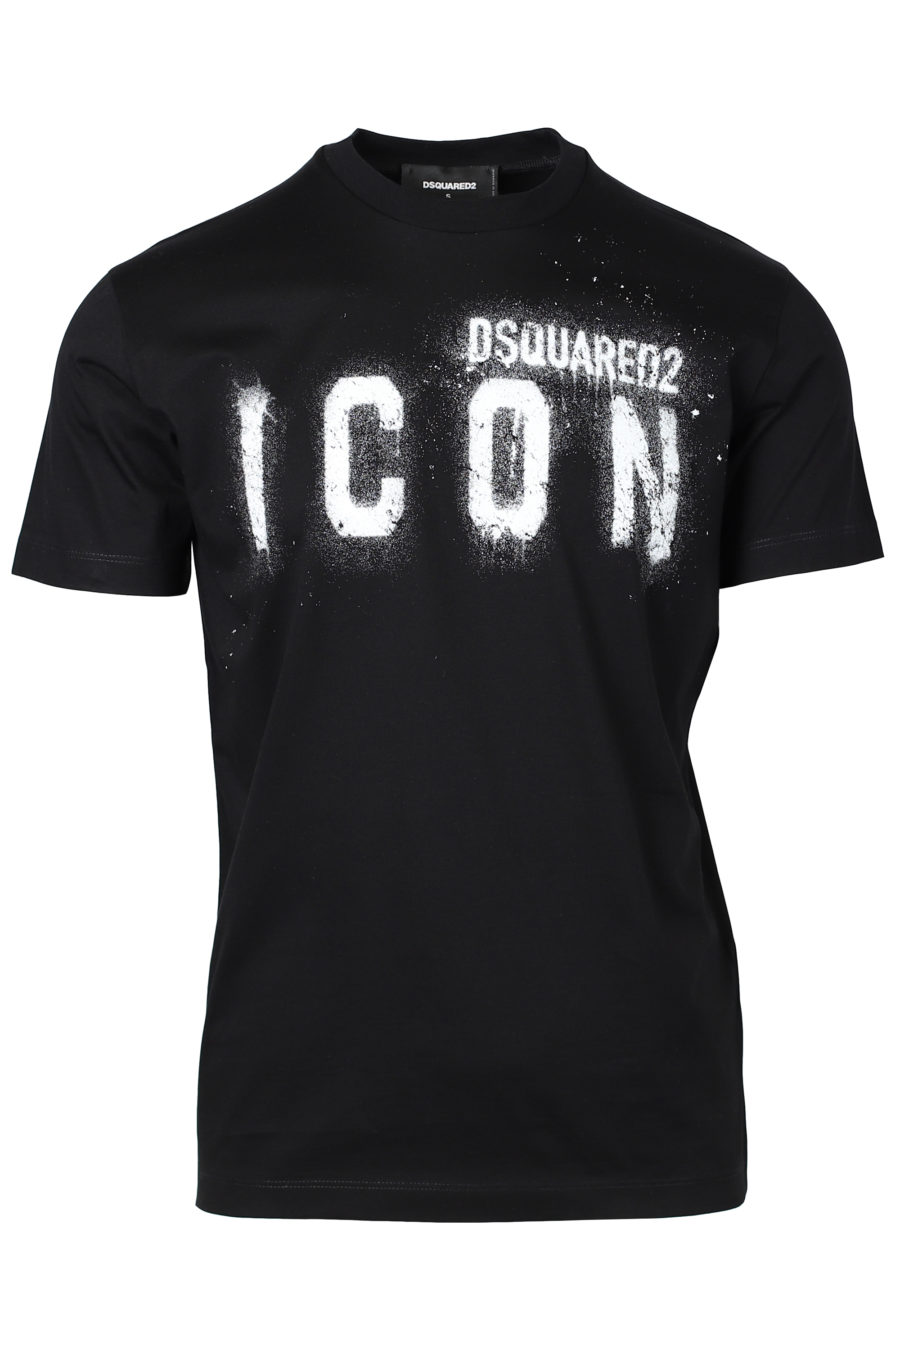 Camiseta negra con logo "Icon Spray" - IMG 2229